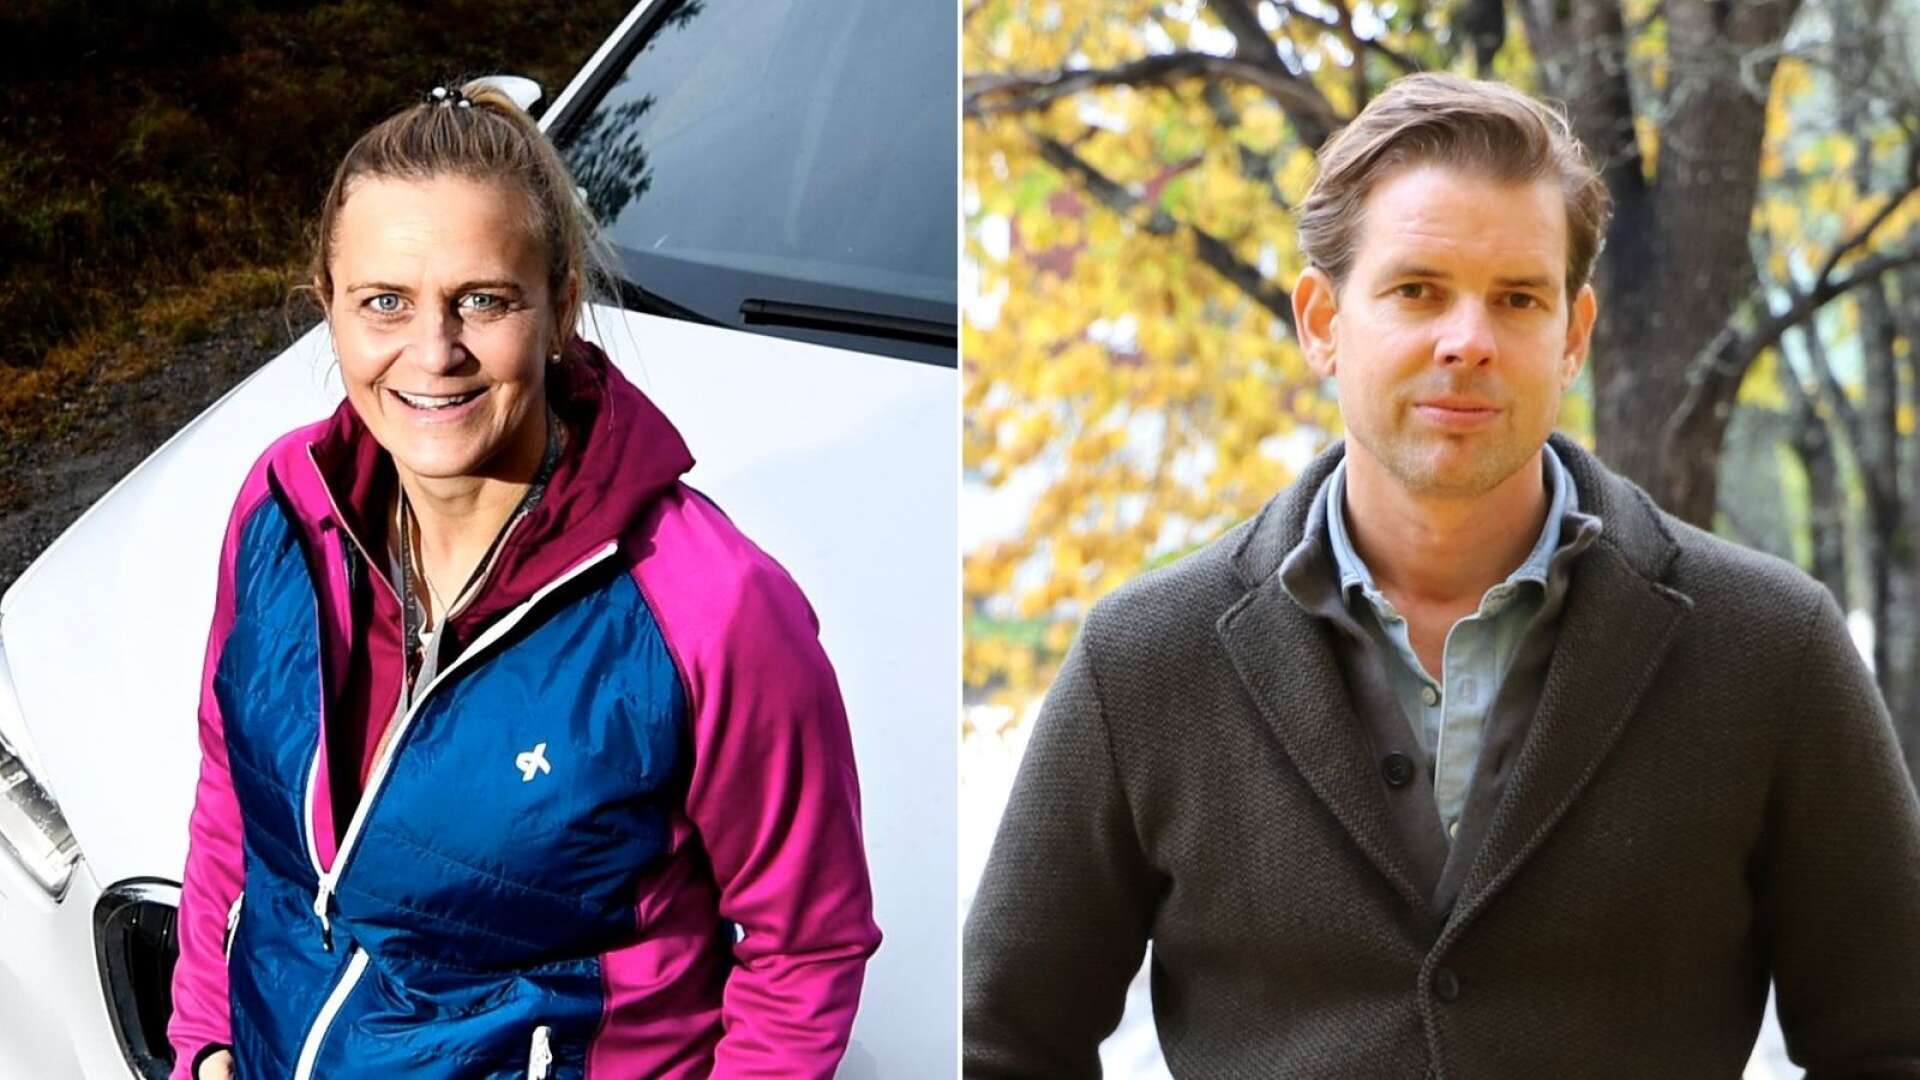 Tina Thörner och Alex Schulman är båda klara som gäster på Värmlands bokfestival, som arrangeras den 19-20 november.